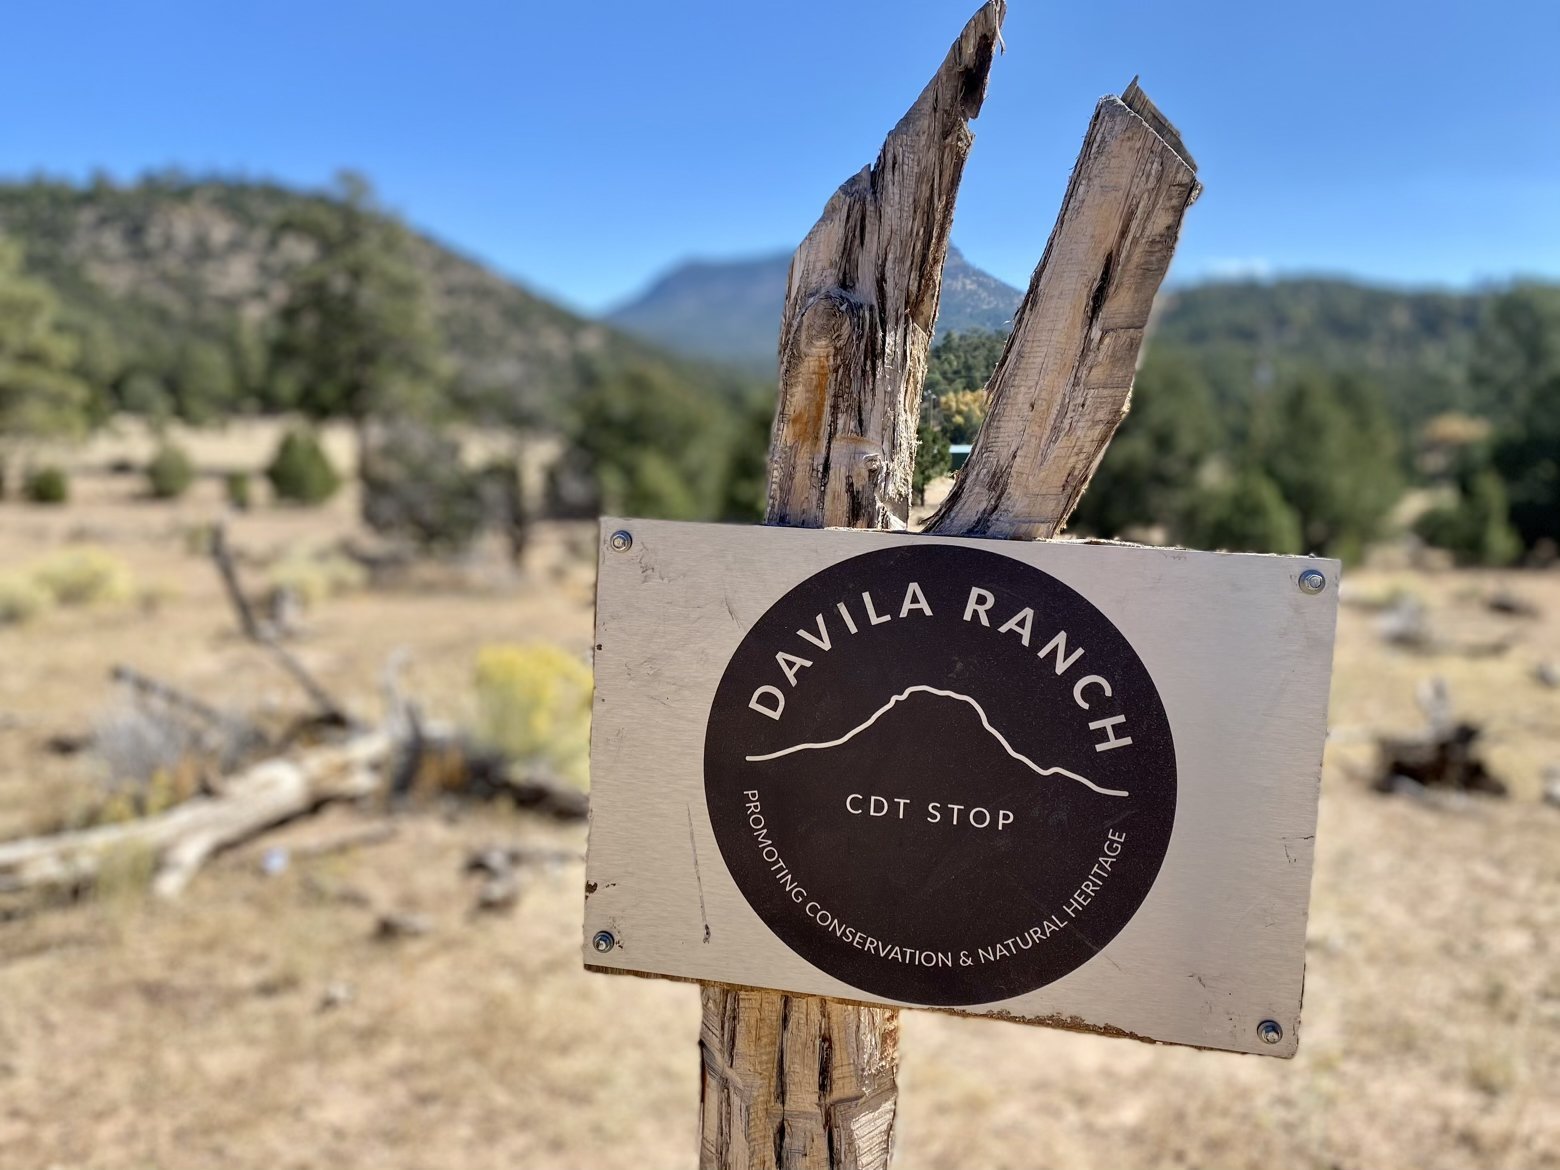 Davila Ranch